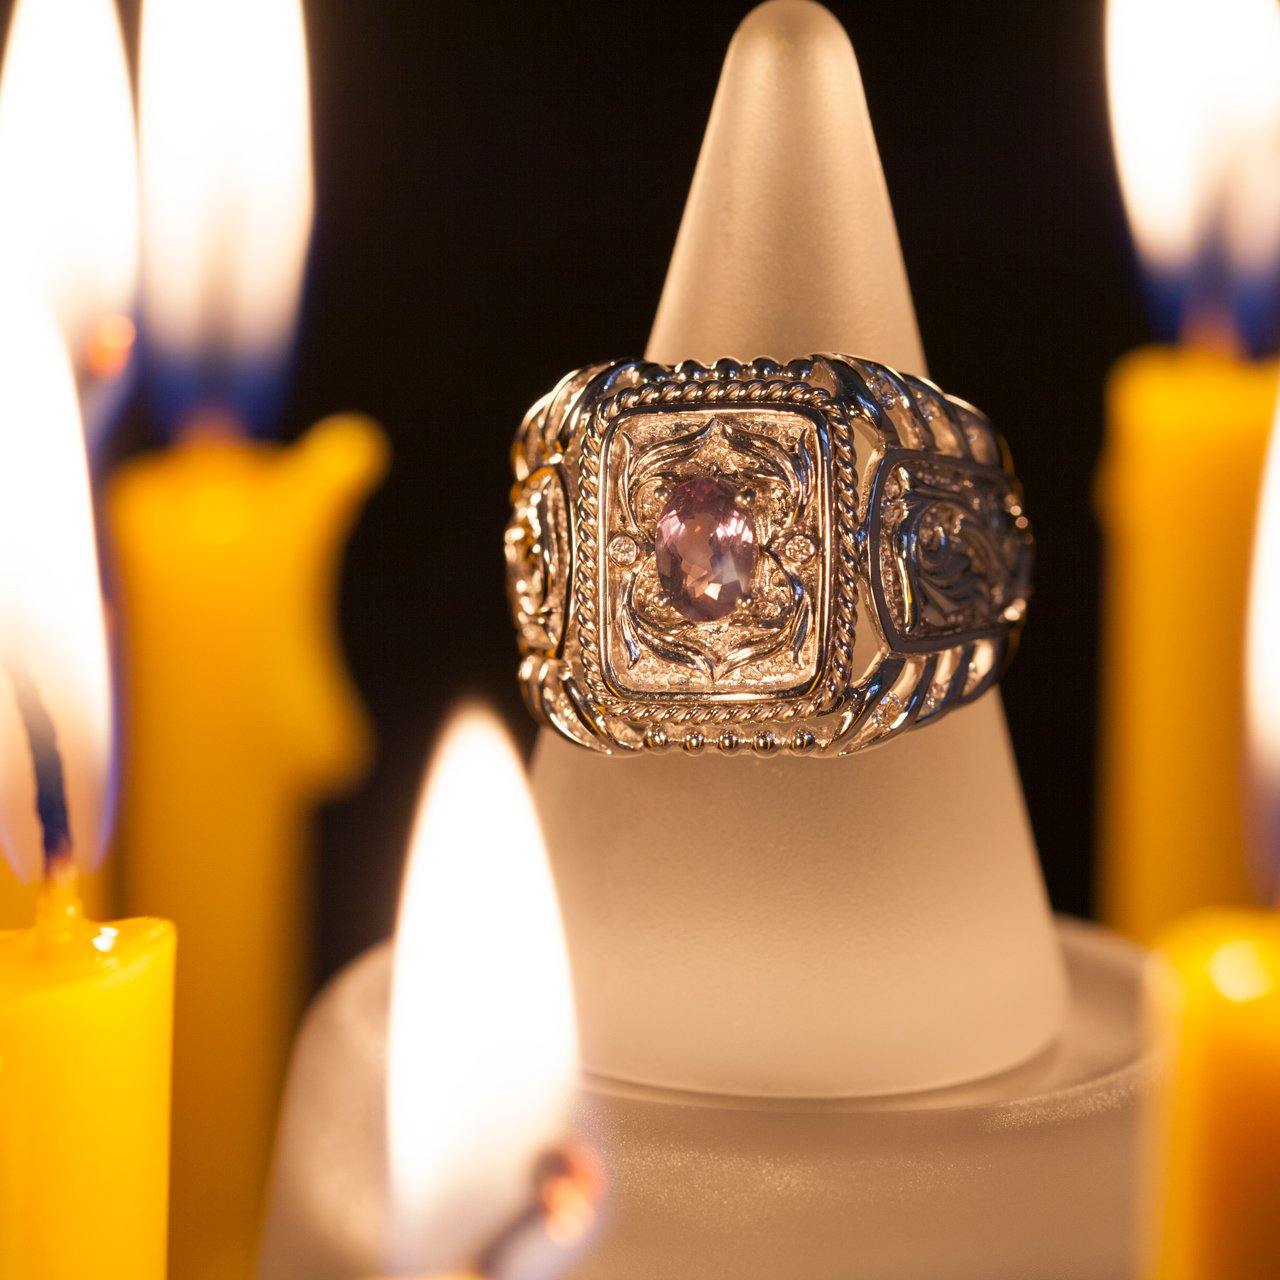 1.12ctw Natural Alexandrite Diamond 18k White Gold Designers Men's Ring - The Alexandrite